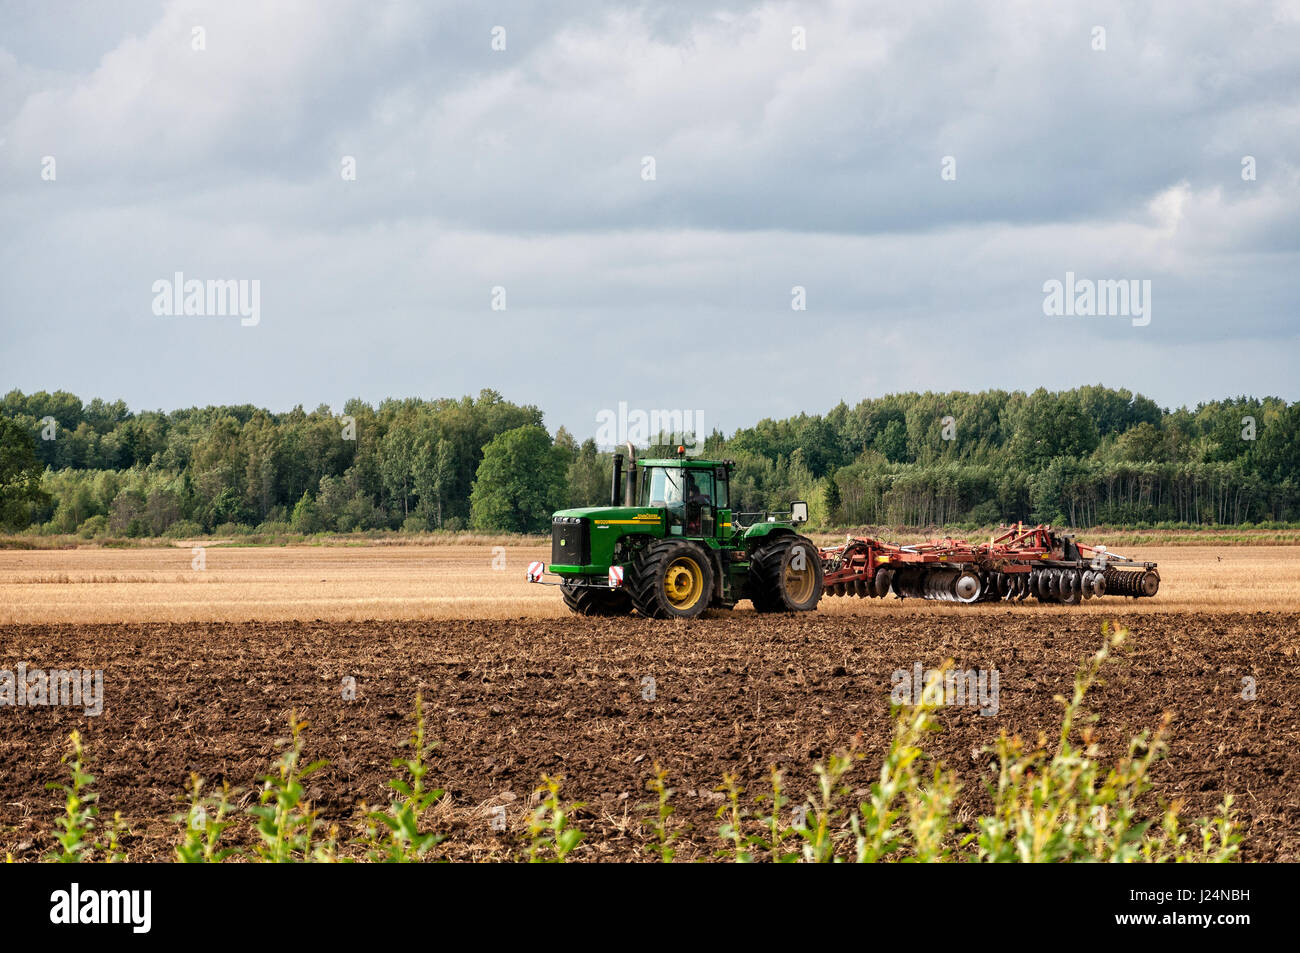 DOBELE, LETTONIE - 9 août 2011 : tracteur vert traite le terrain pour la nouvelle récolte. Banque D'Images